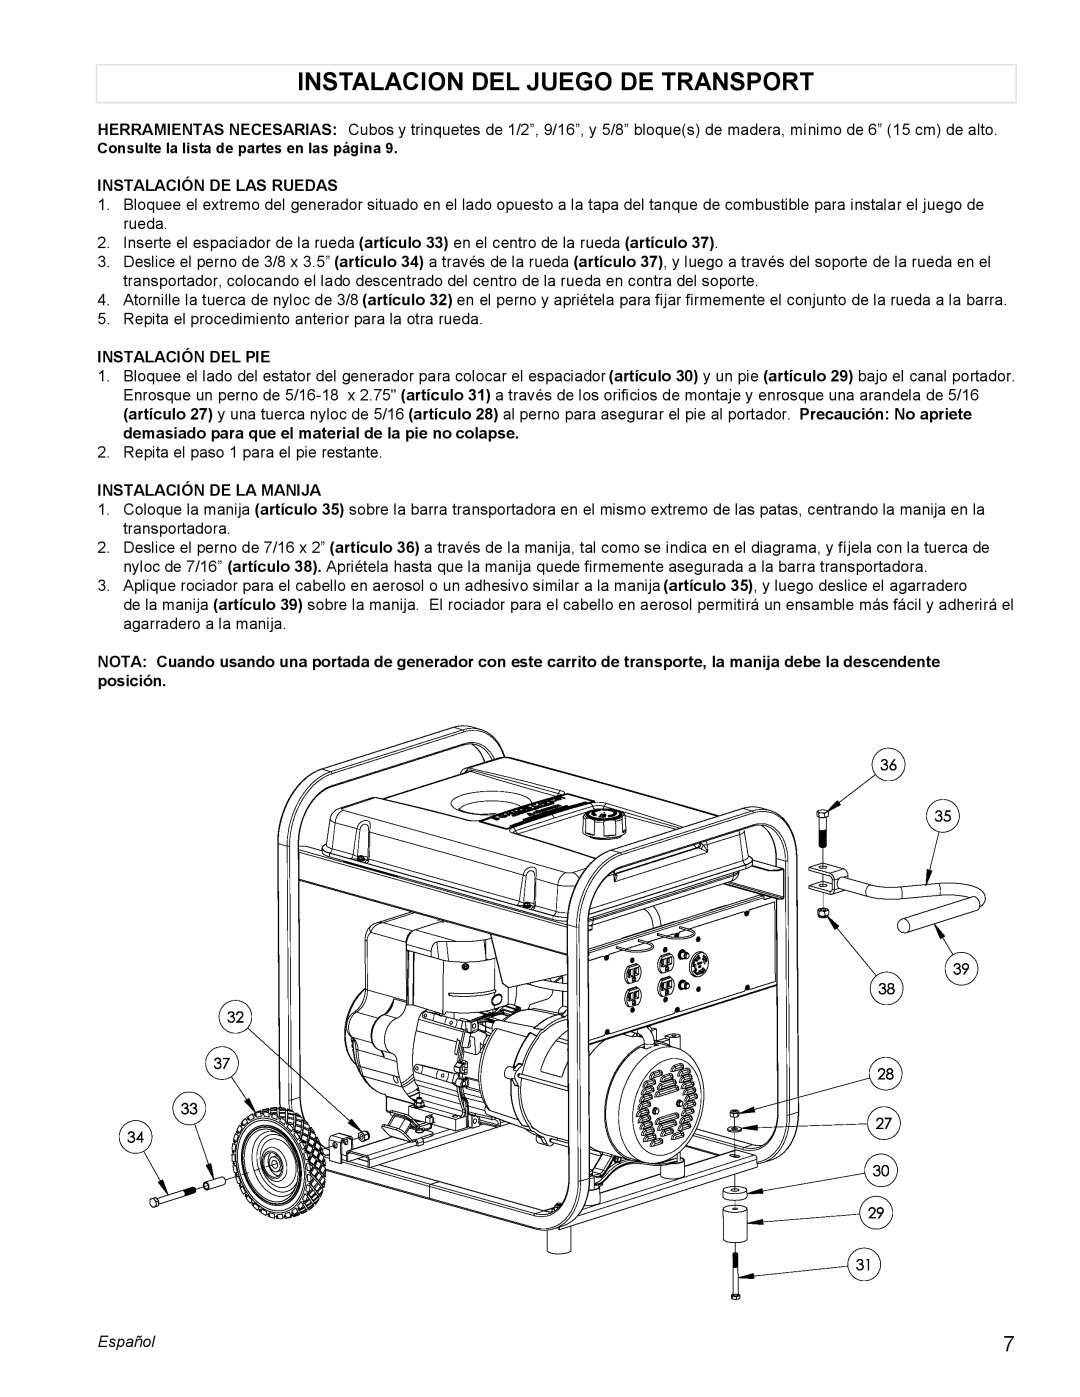 Powermate PM0525312.01 manual Instalacion Del Juego De Transport, Instalación De Las Ruedas, Instalación Del Pie, Español 